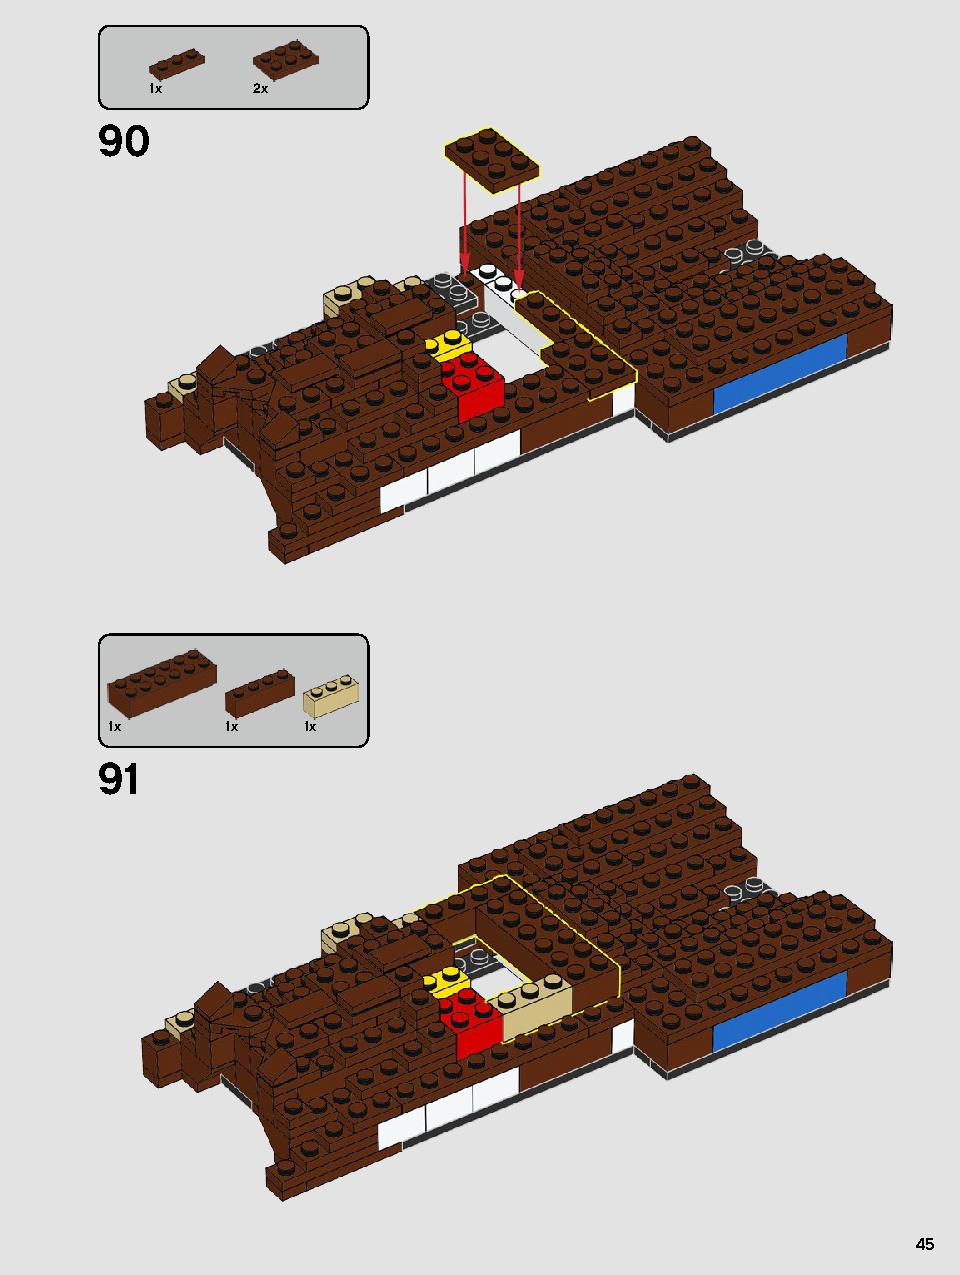 ヨーダ™ 75255 レゴの商品情報 レゴの説明書・組立方法 45 page